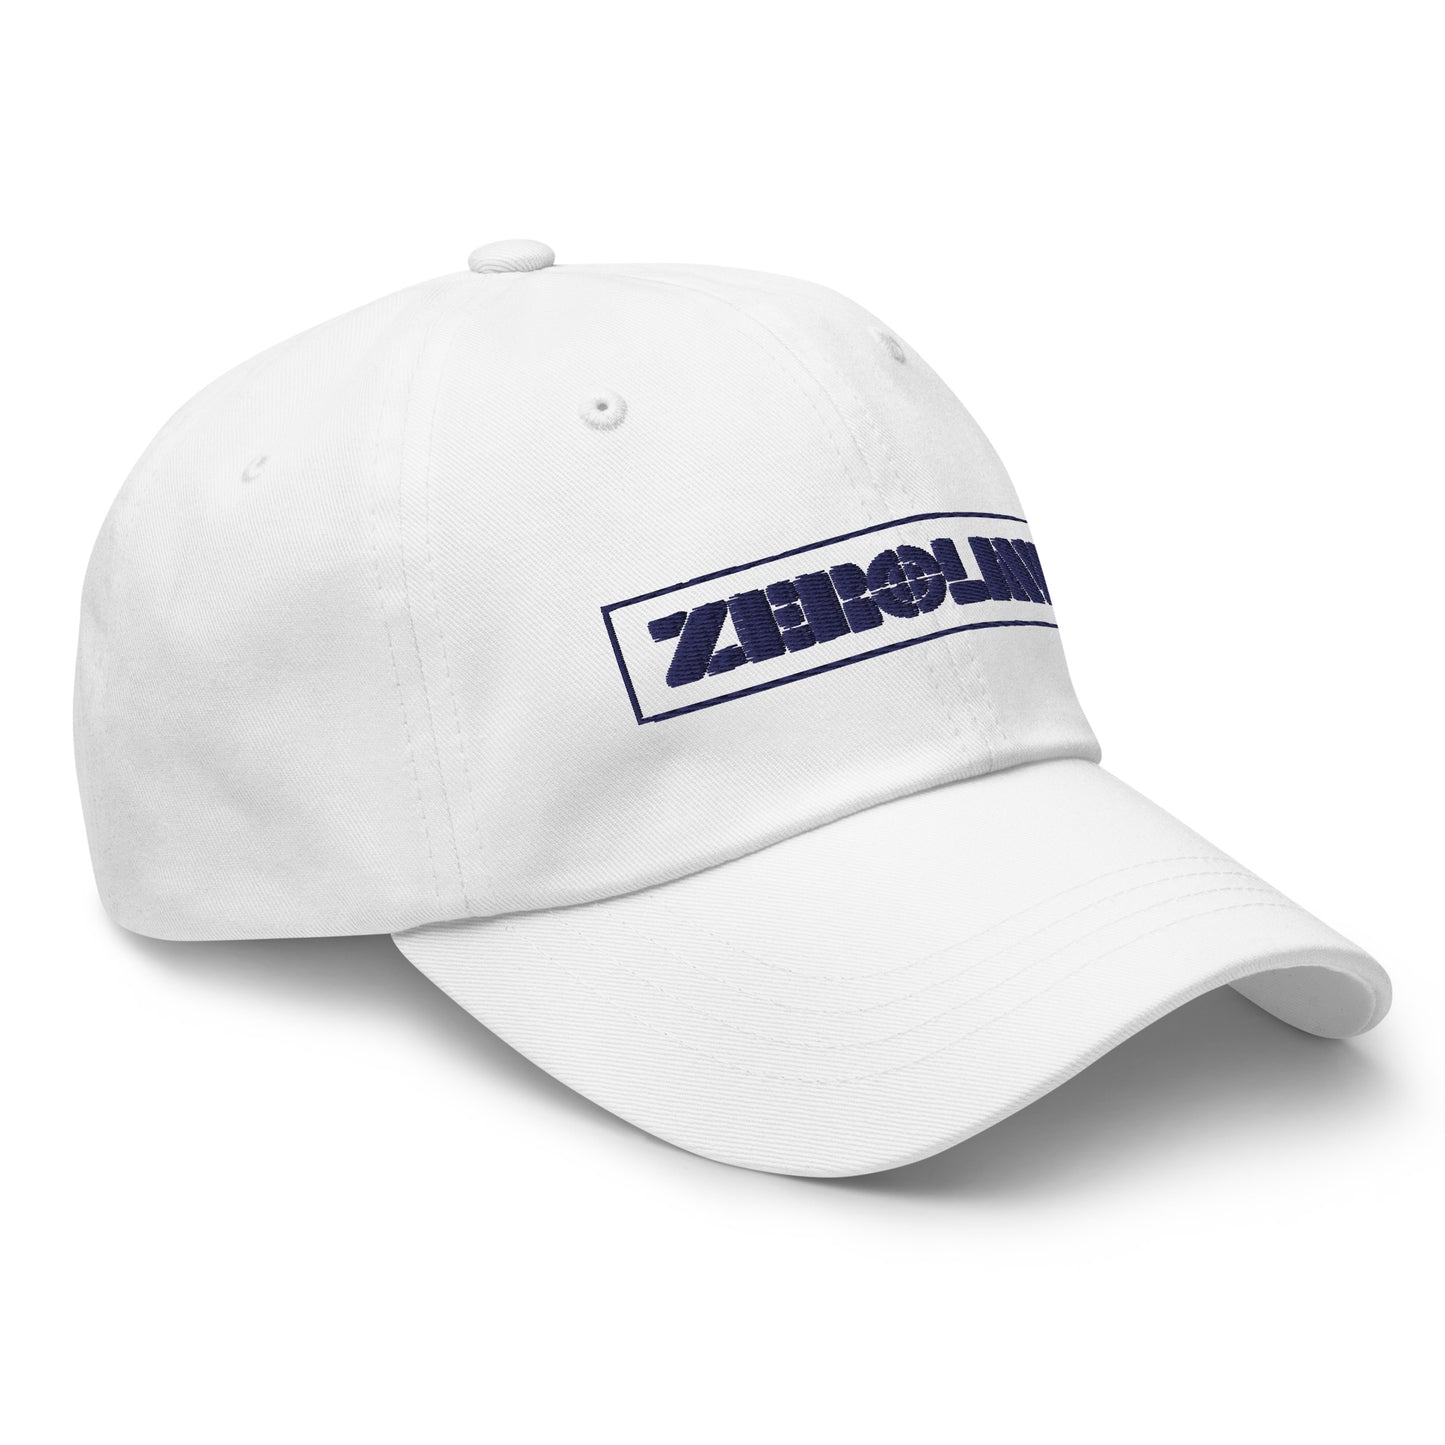 Zeroline - Dad hat